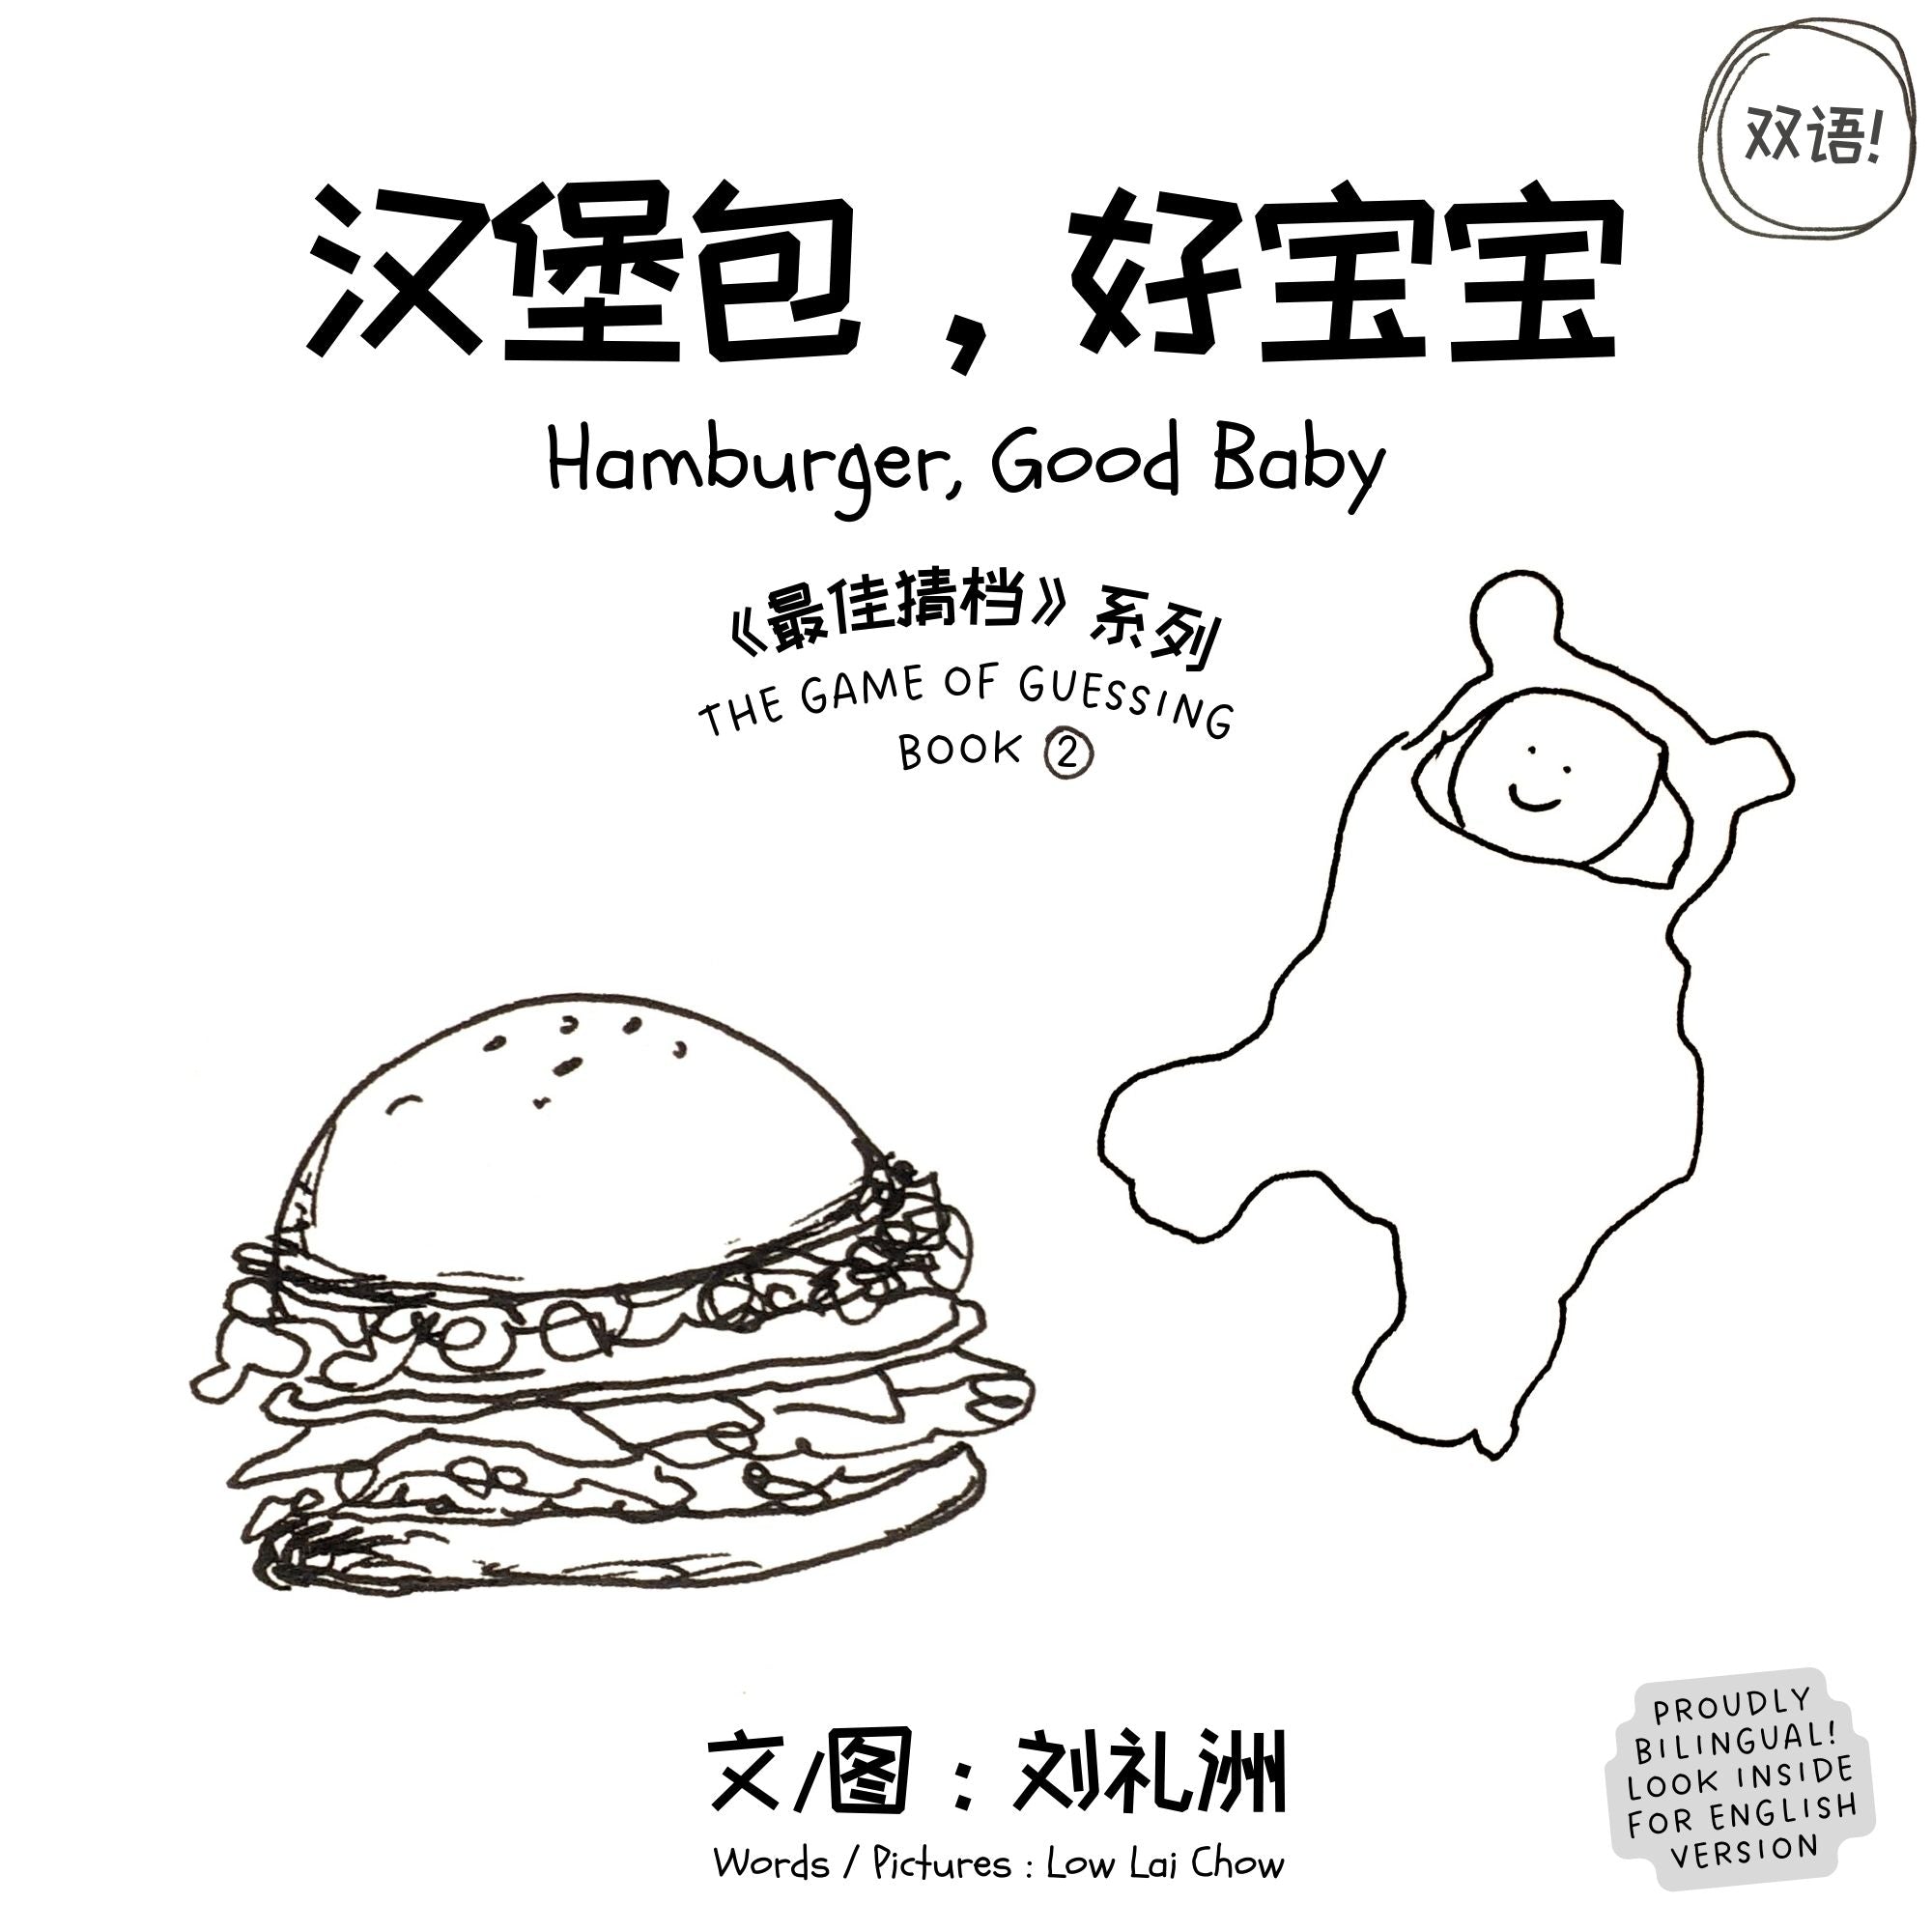 汉堡包，好宝宝 (Hamburger, Good Baby) Book 2